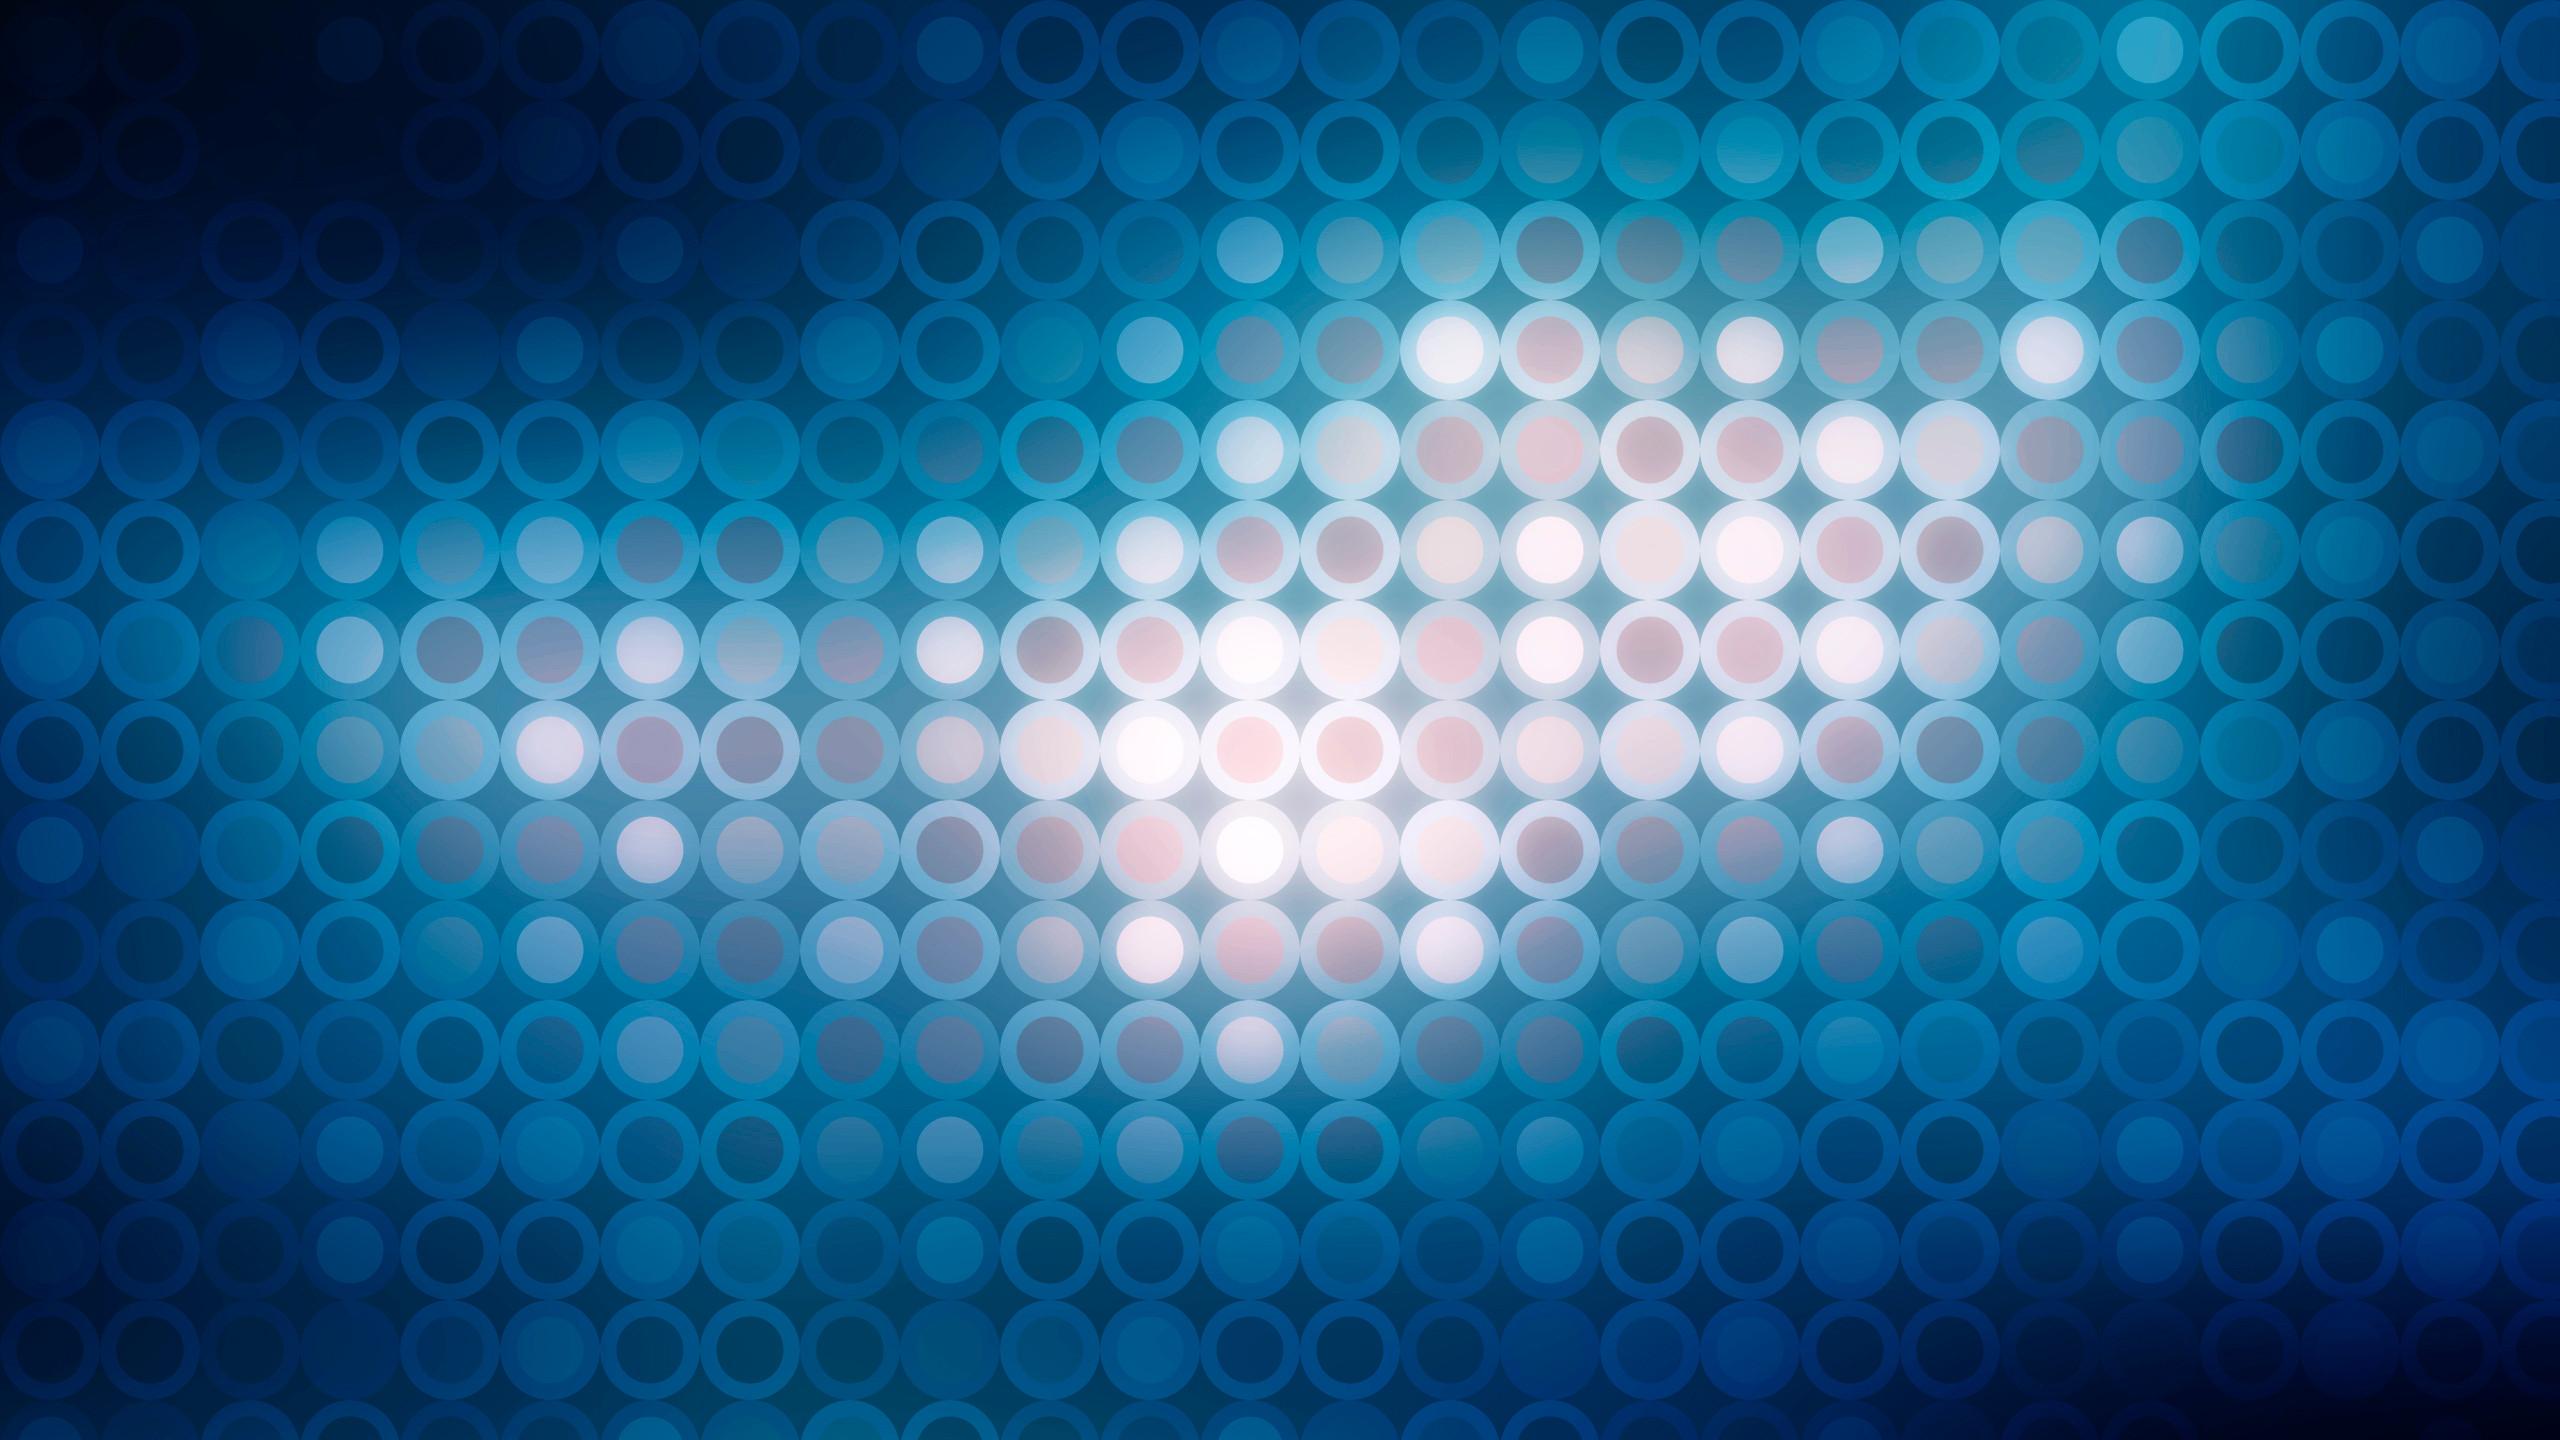 1440p Abstract Blue Dots Pattern Circle HD Wallpaper